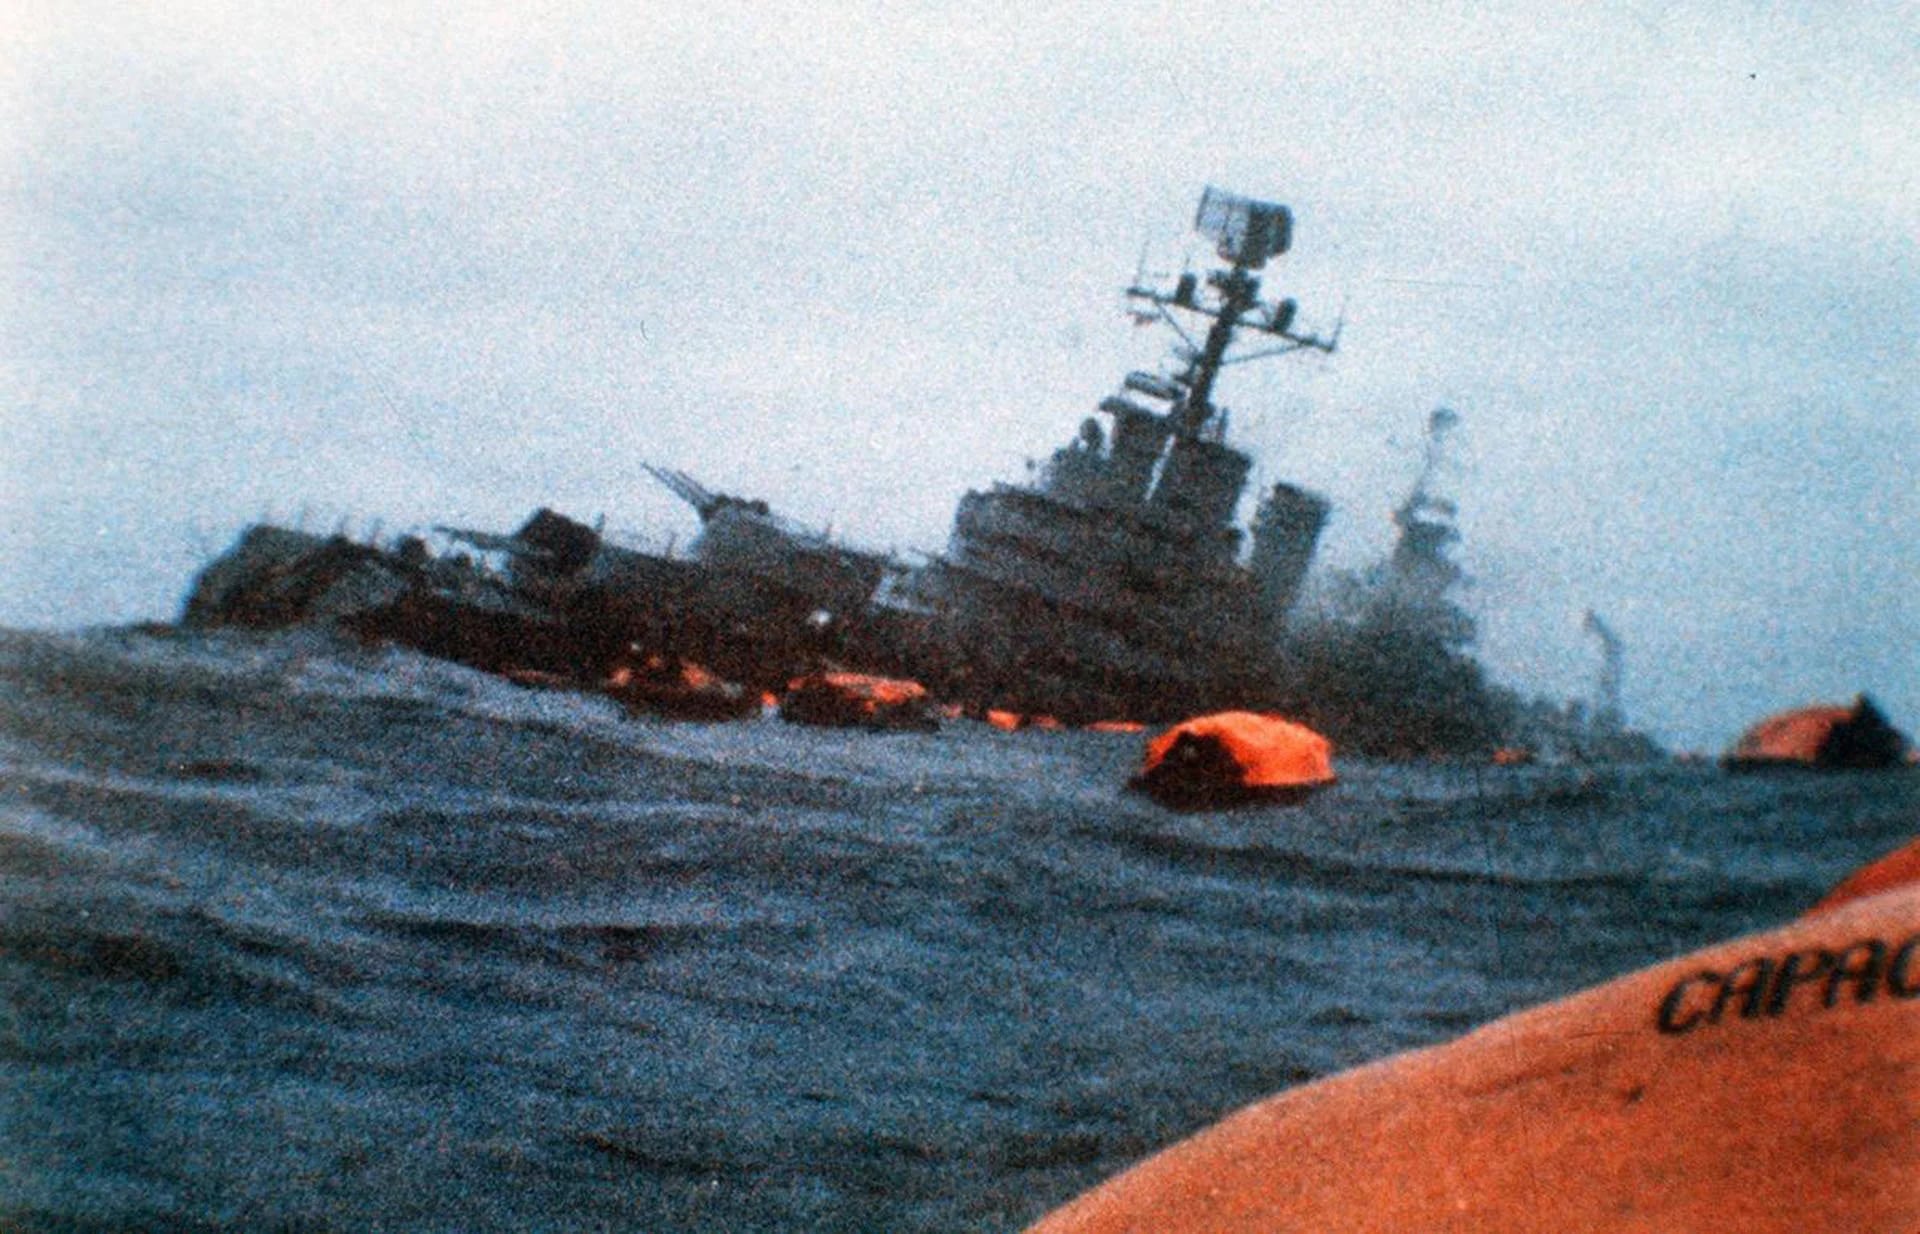 El hundimiento del ARA General Belgrano se produjo el domingo 2 de mayo de 1982 por el ataque del submarino nuclear británico HMS Conqueror. Llevaba 1091 tripulantes, murieron 323 (AP)